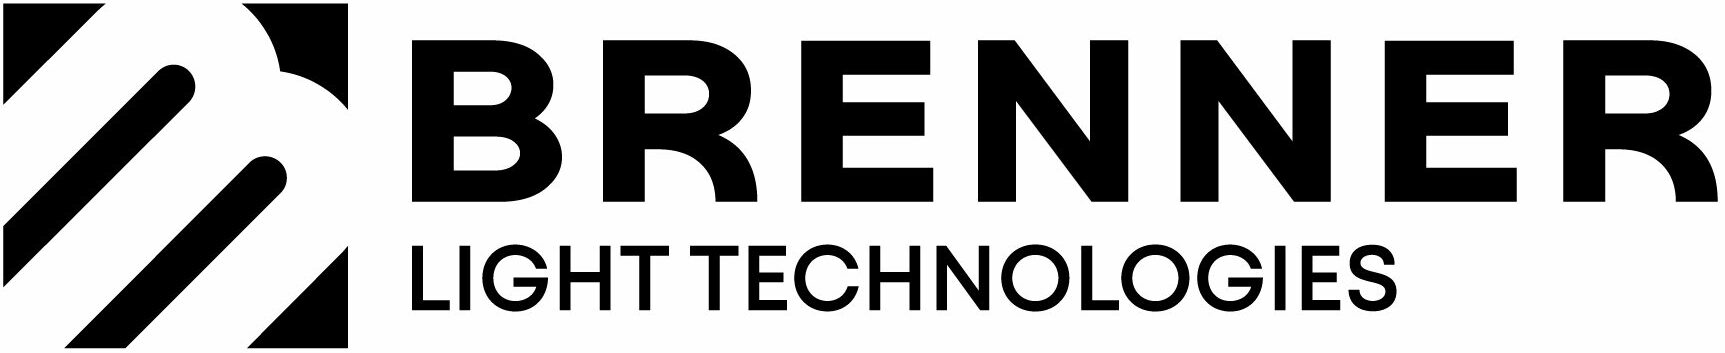 Brenner Light Technologies